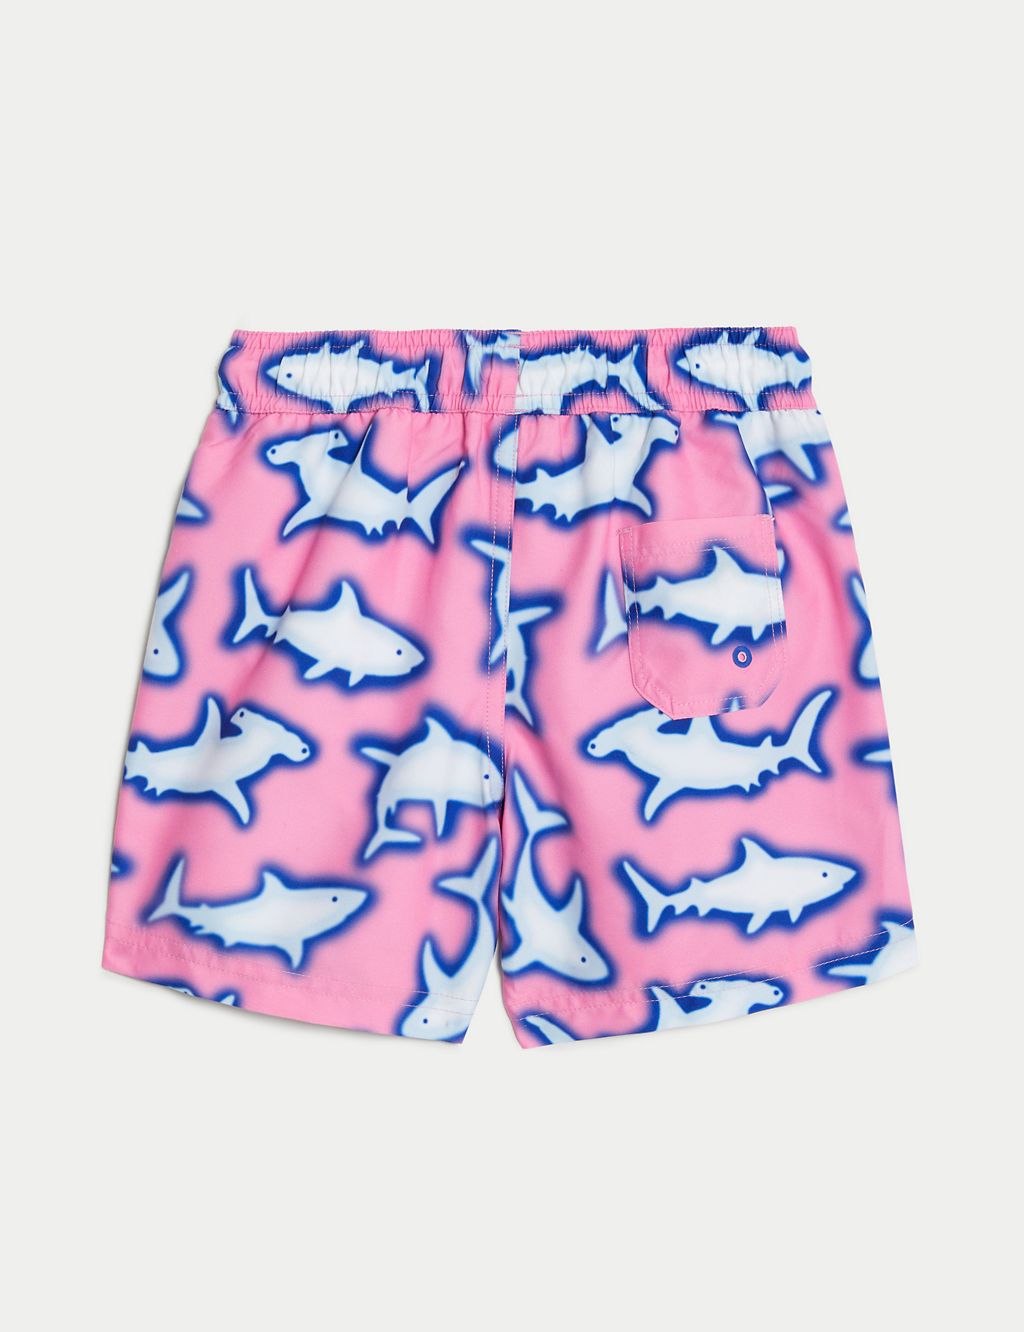 Shark Swim Shorts (2-8 Yrs) 5 of 6